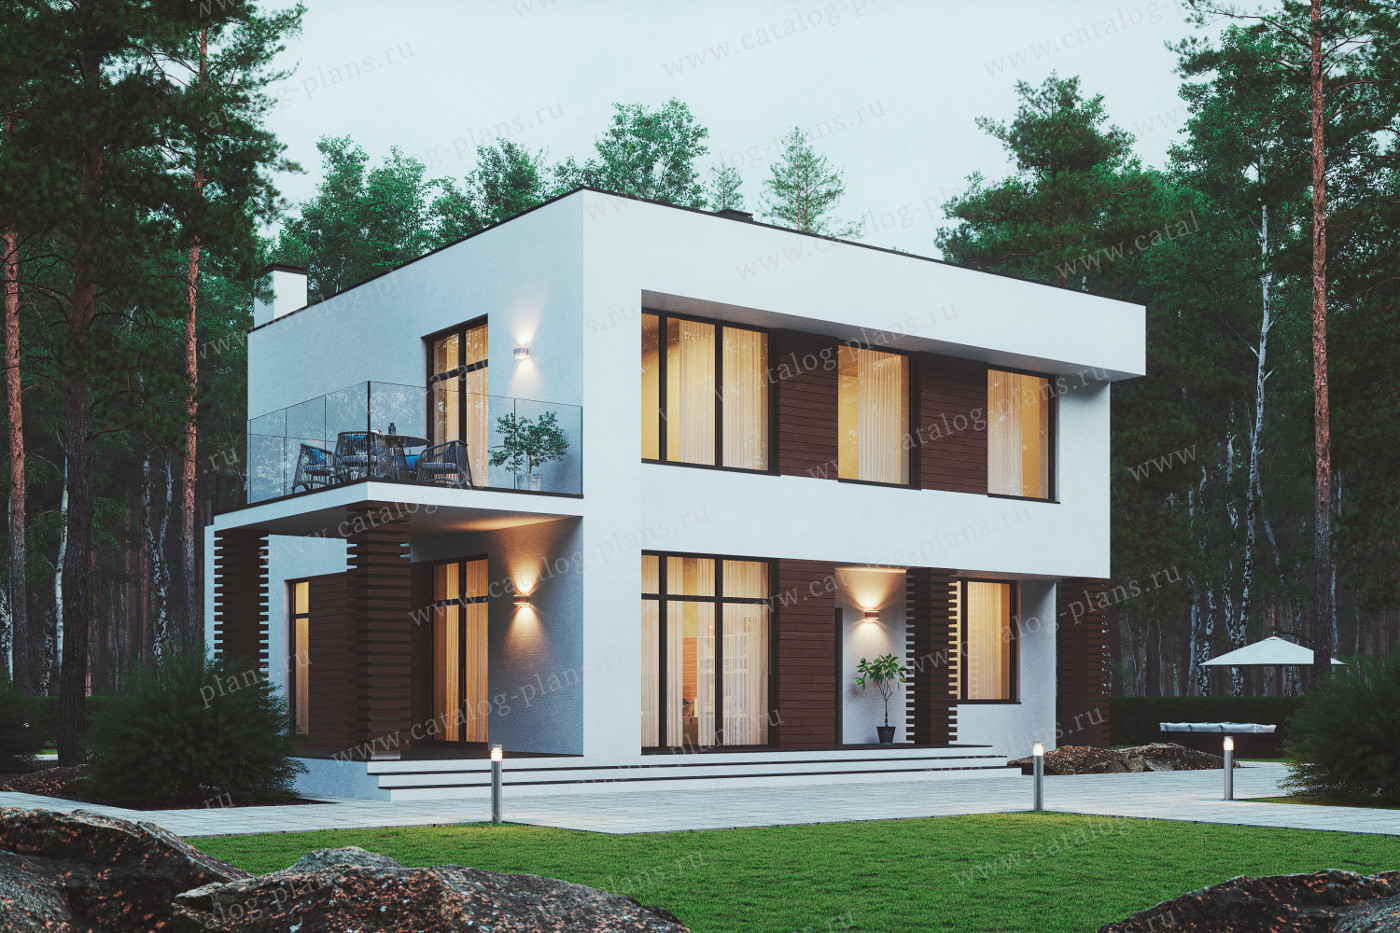 Проект 62-07ABD, жилой дом, материал - газобетонные блоки 400, количество этажей - 2, архитектурный стиль - хай-тек, фундамент - монолитная ж/б плита